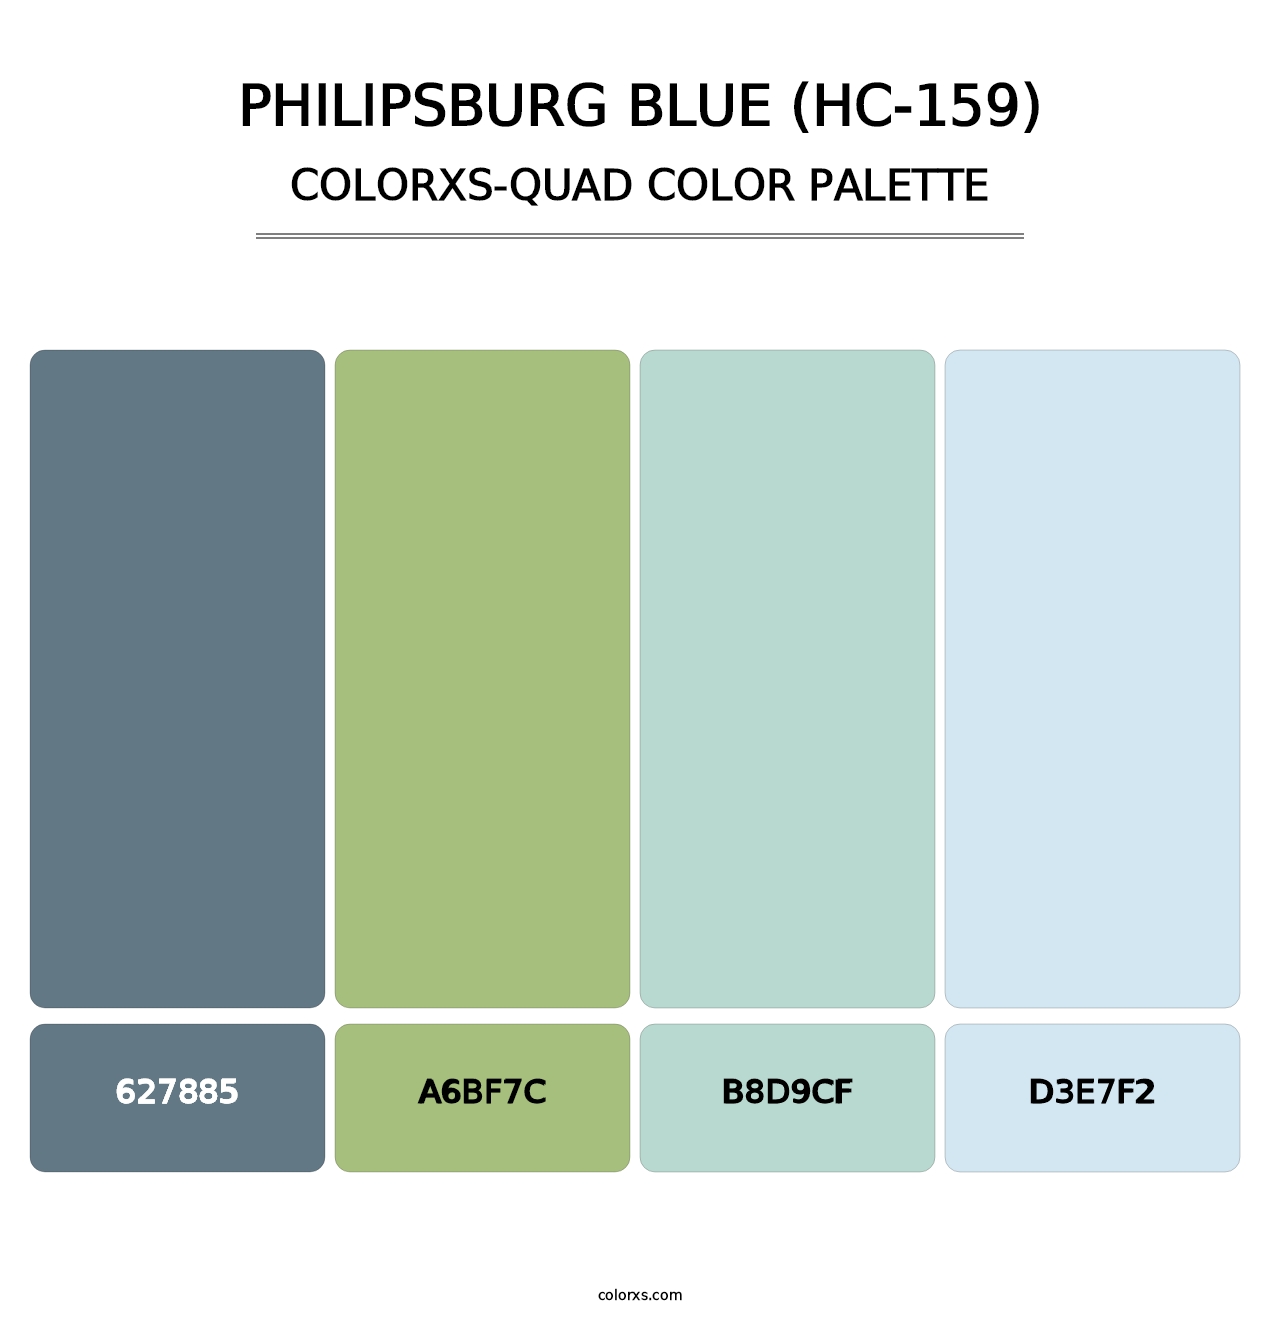 Philipsburg Blue (HC-159) - Colorxs Quad Palette